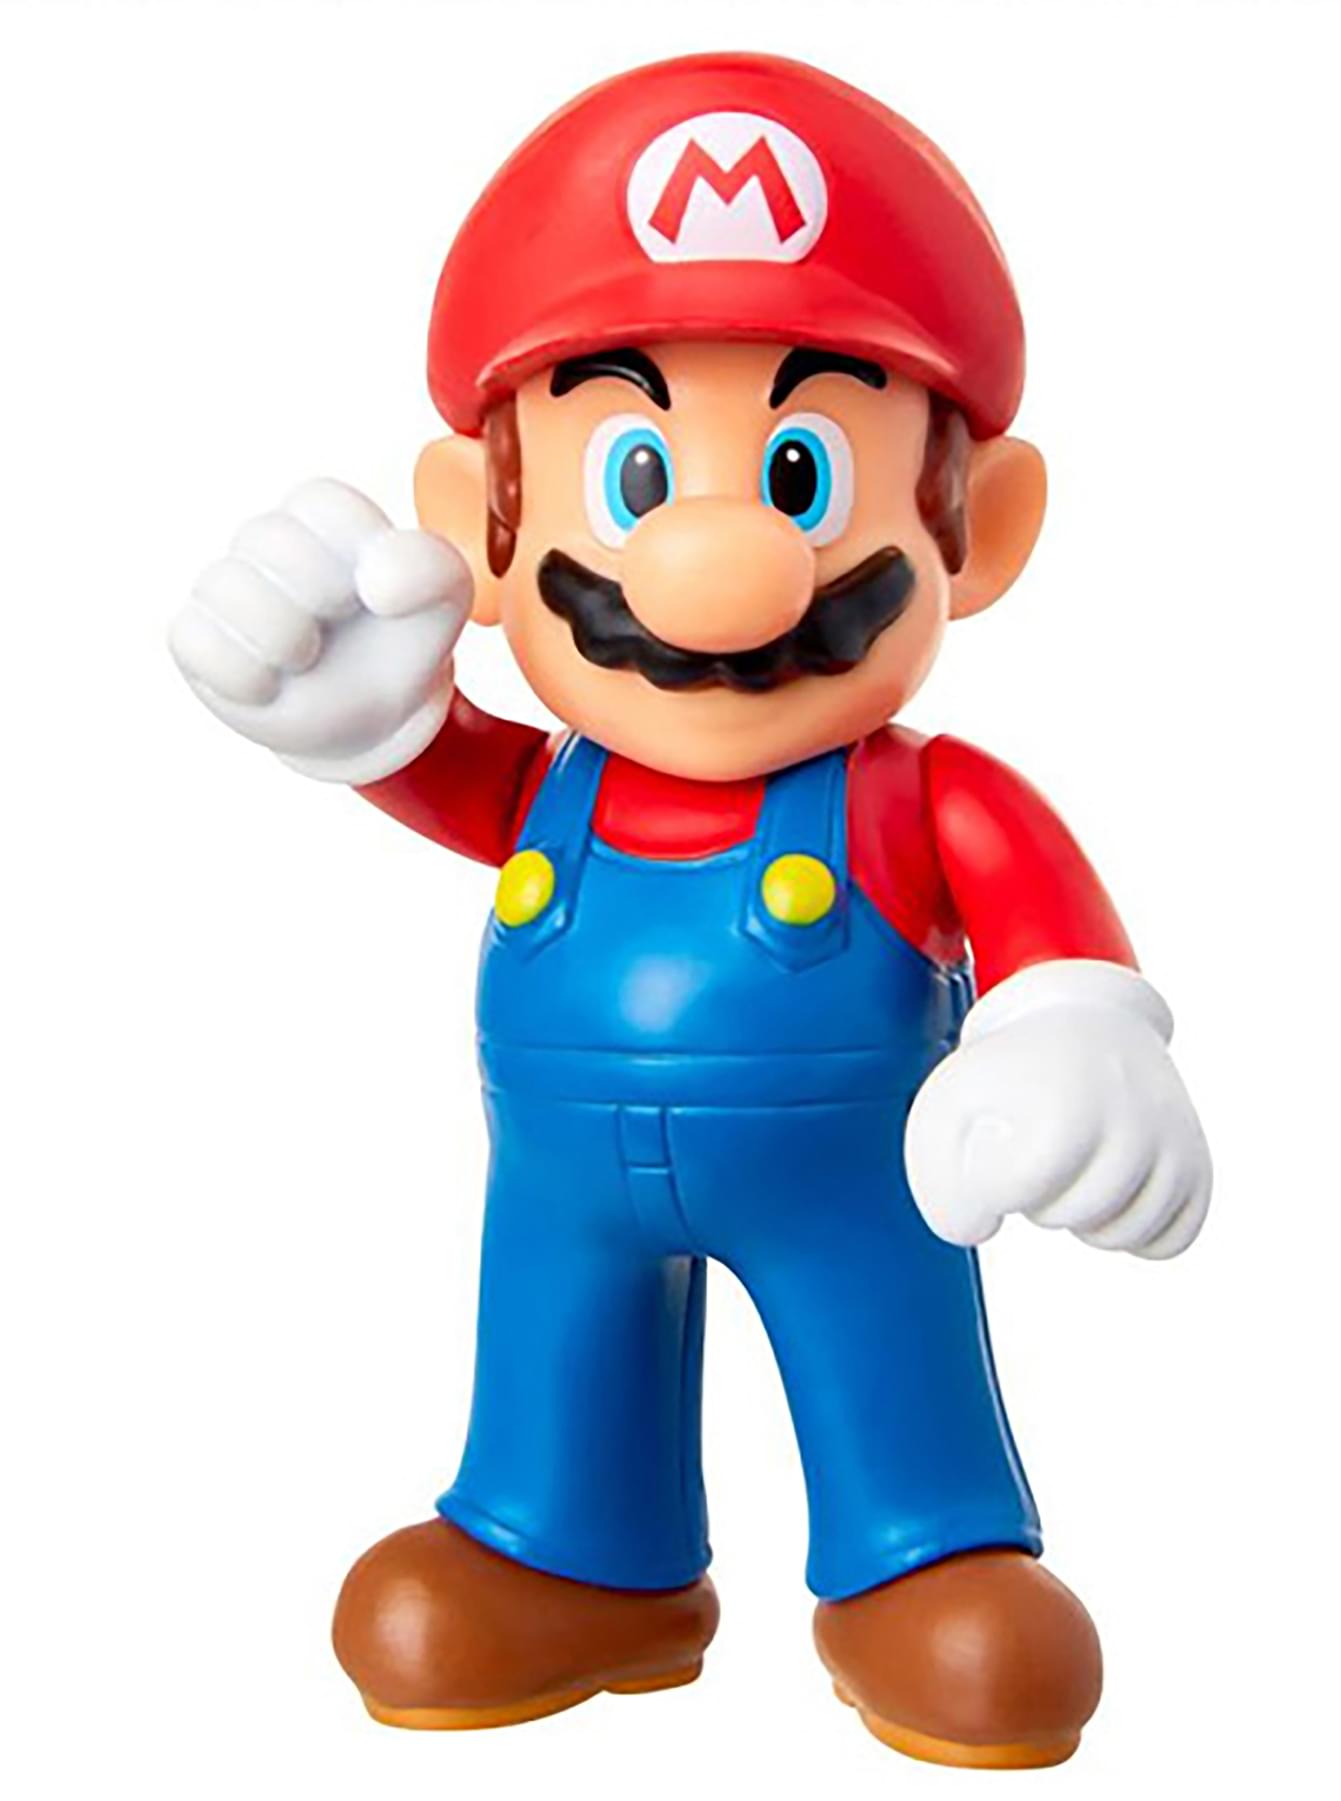 Super Mario World of Nintendo 2.5 Inch Figure | Mario